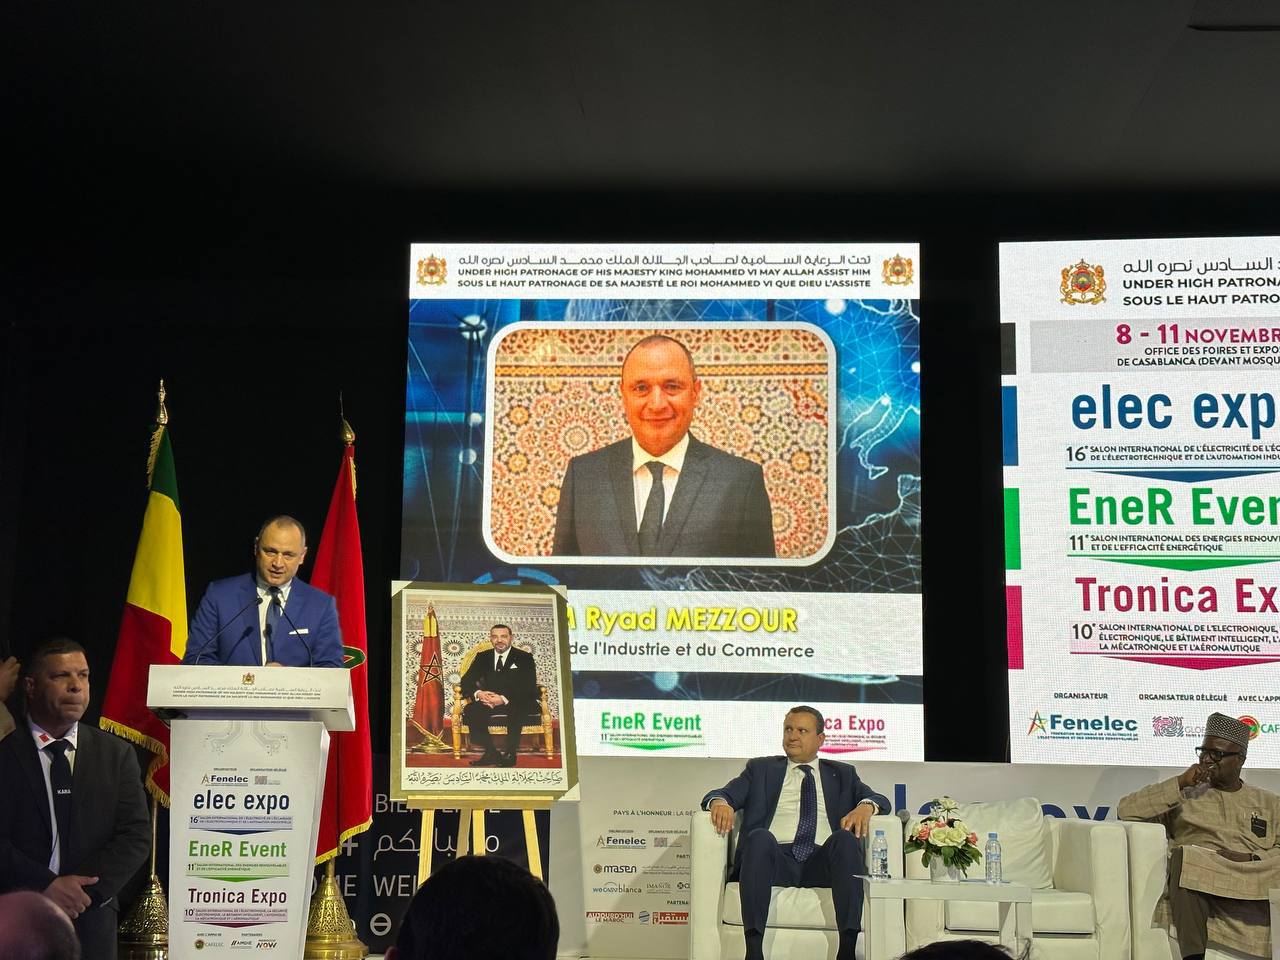 Состоялось официальное открытие выставки Elec-expo в Марокко